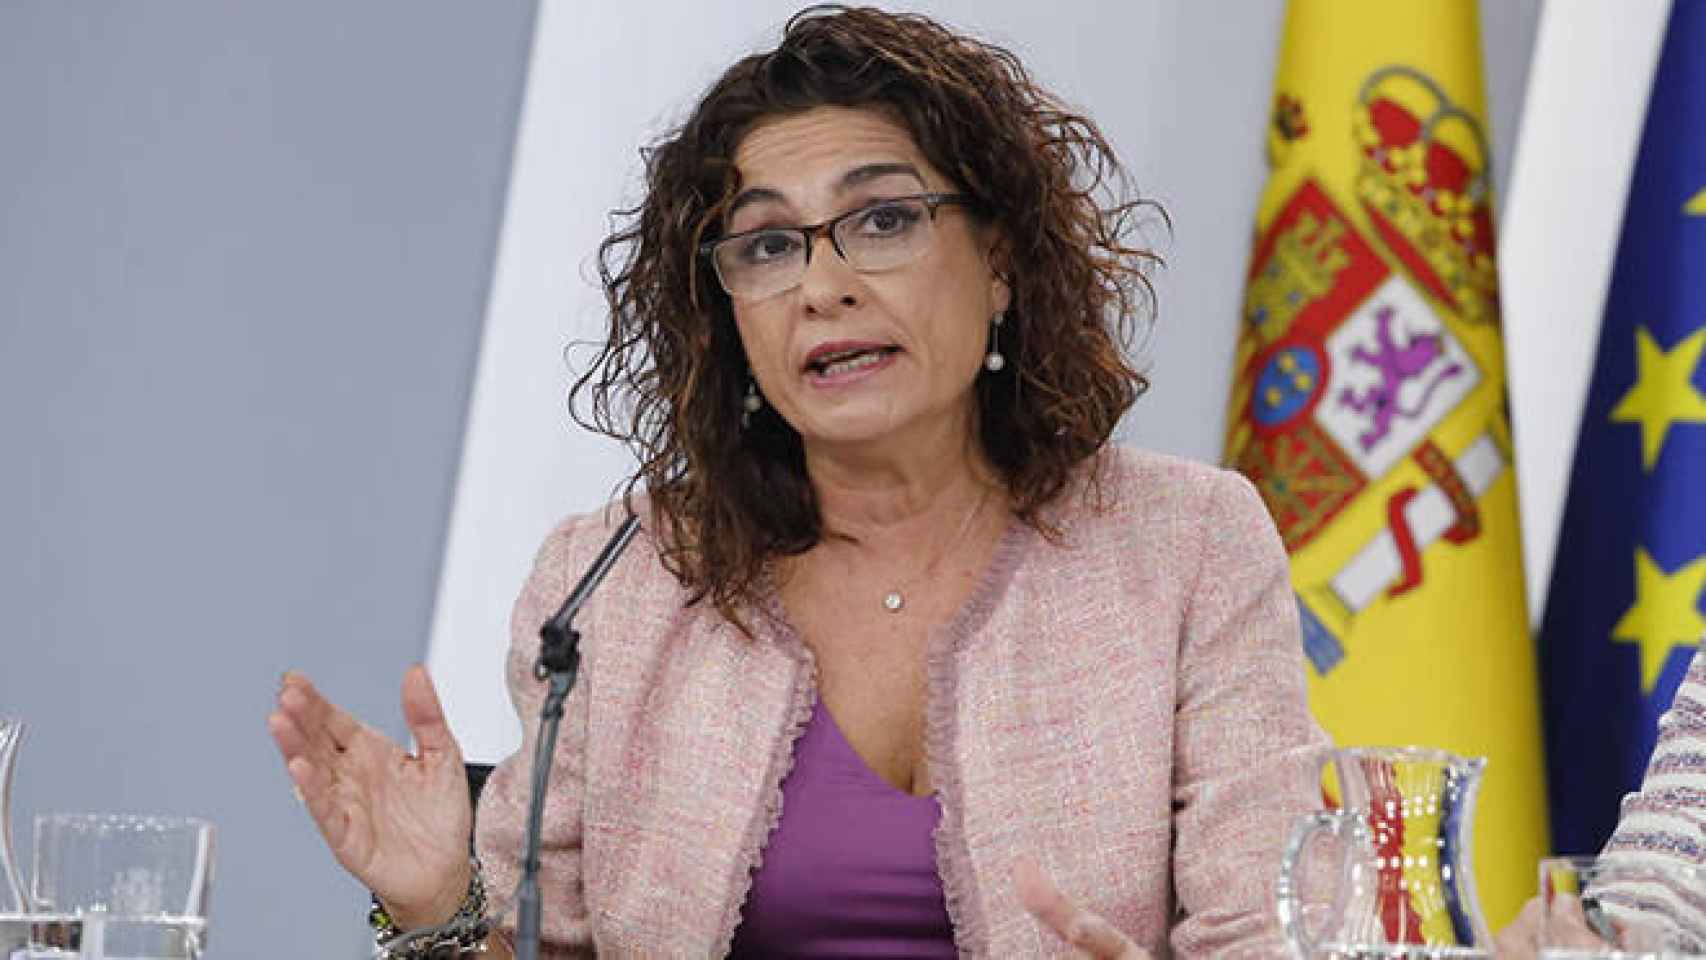 FOTO: María Jesús Montero, ministra de Hacienda (EP).